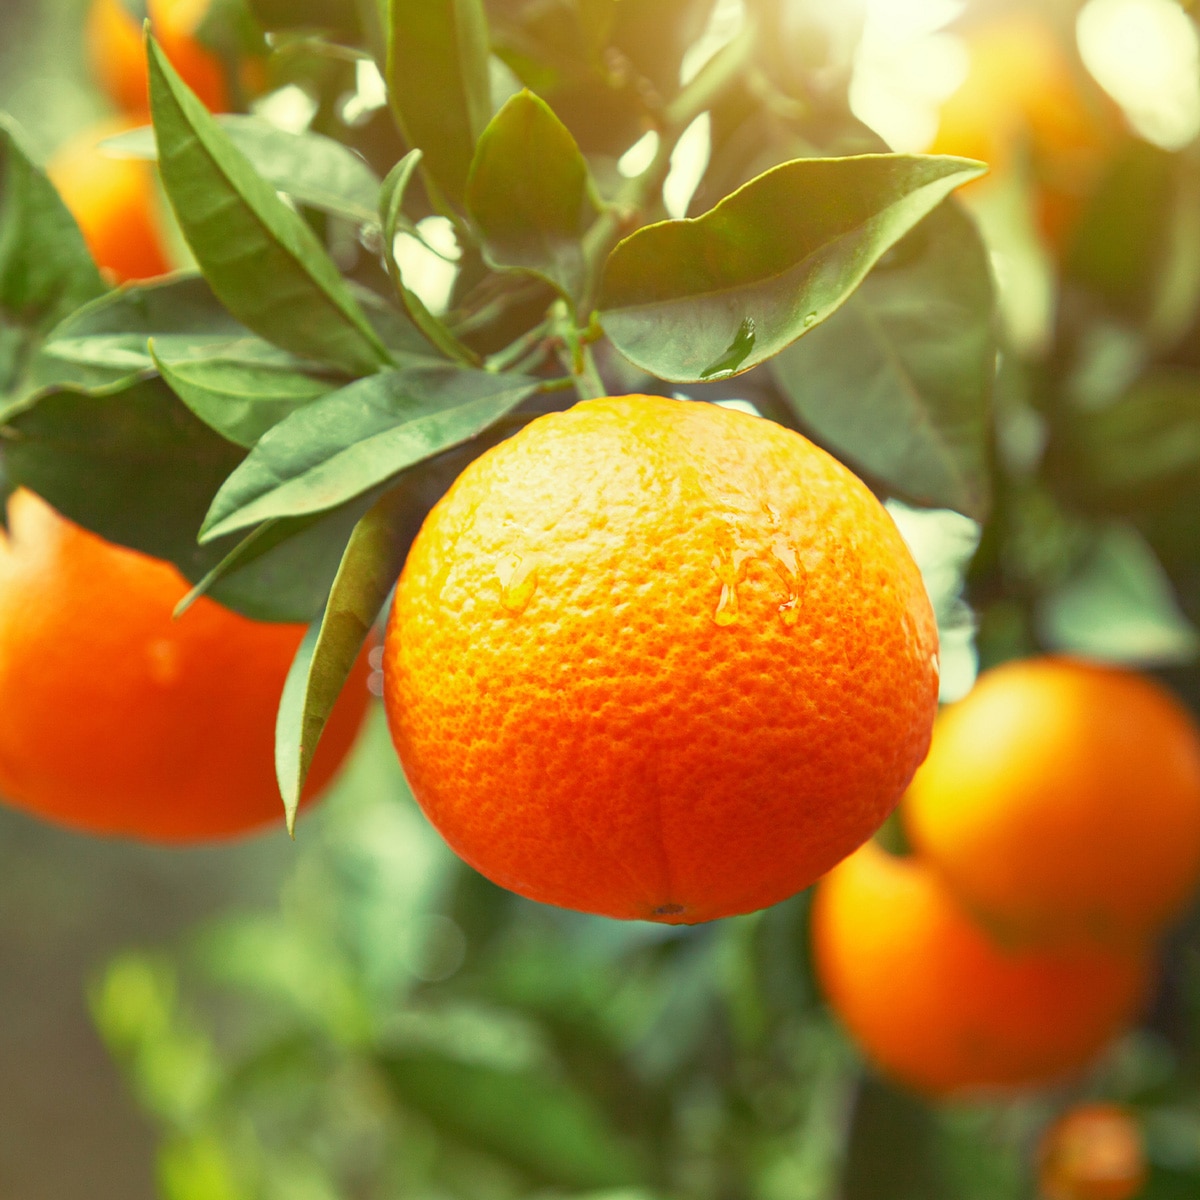 橘子工坊全系列採用100%冷壓橘油.嚴選吸收200天陽光能量的巴西優質好橘,採用頂級冷壓物理萃取工法,每40顆橘子精萃「1cc.珍貴橘油精華」,完整保留天然活性,提供您天然無害的健康潔淨.